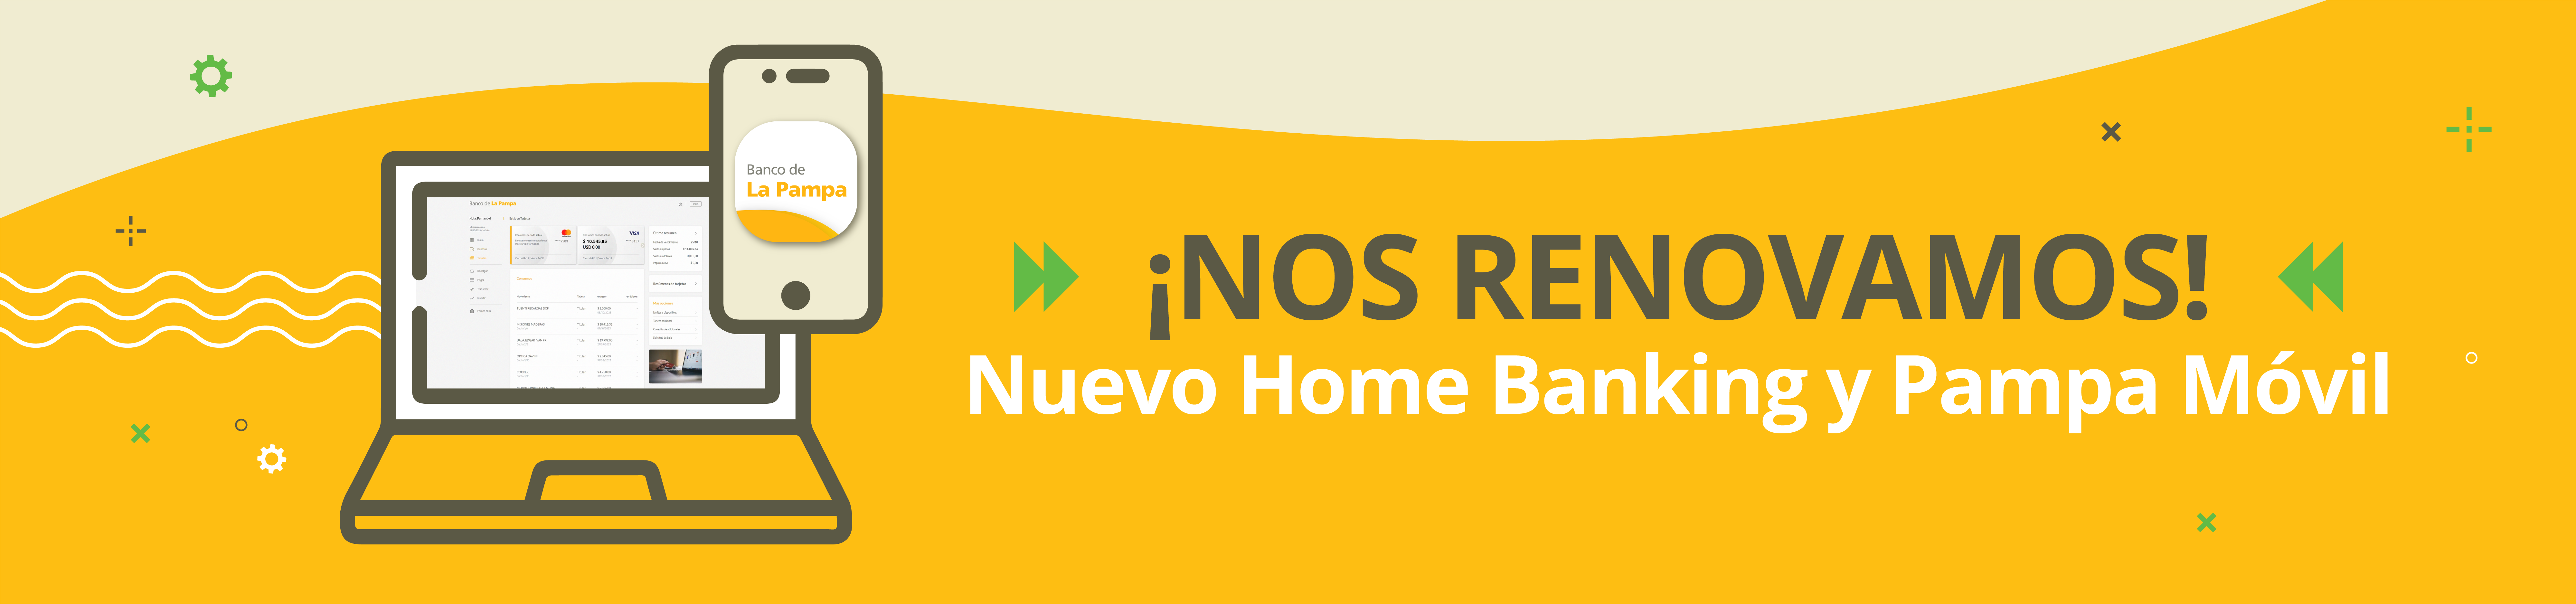 Nuevo Home Banking y Pampa Móvil